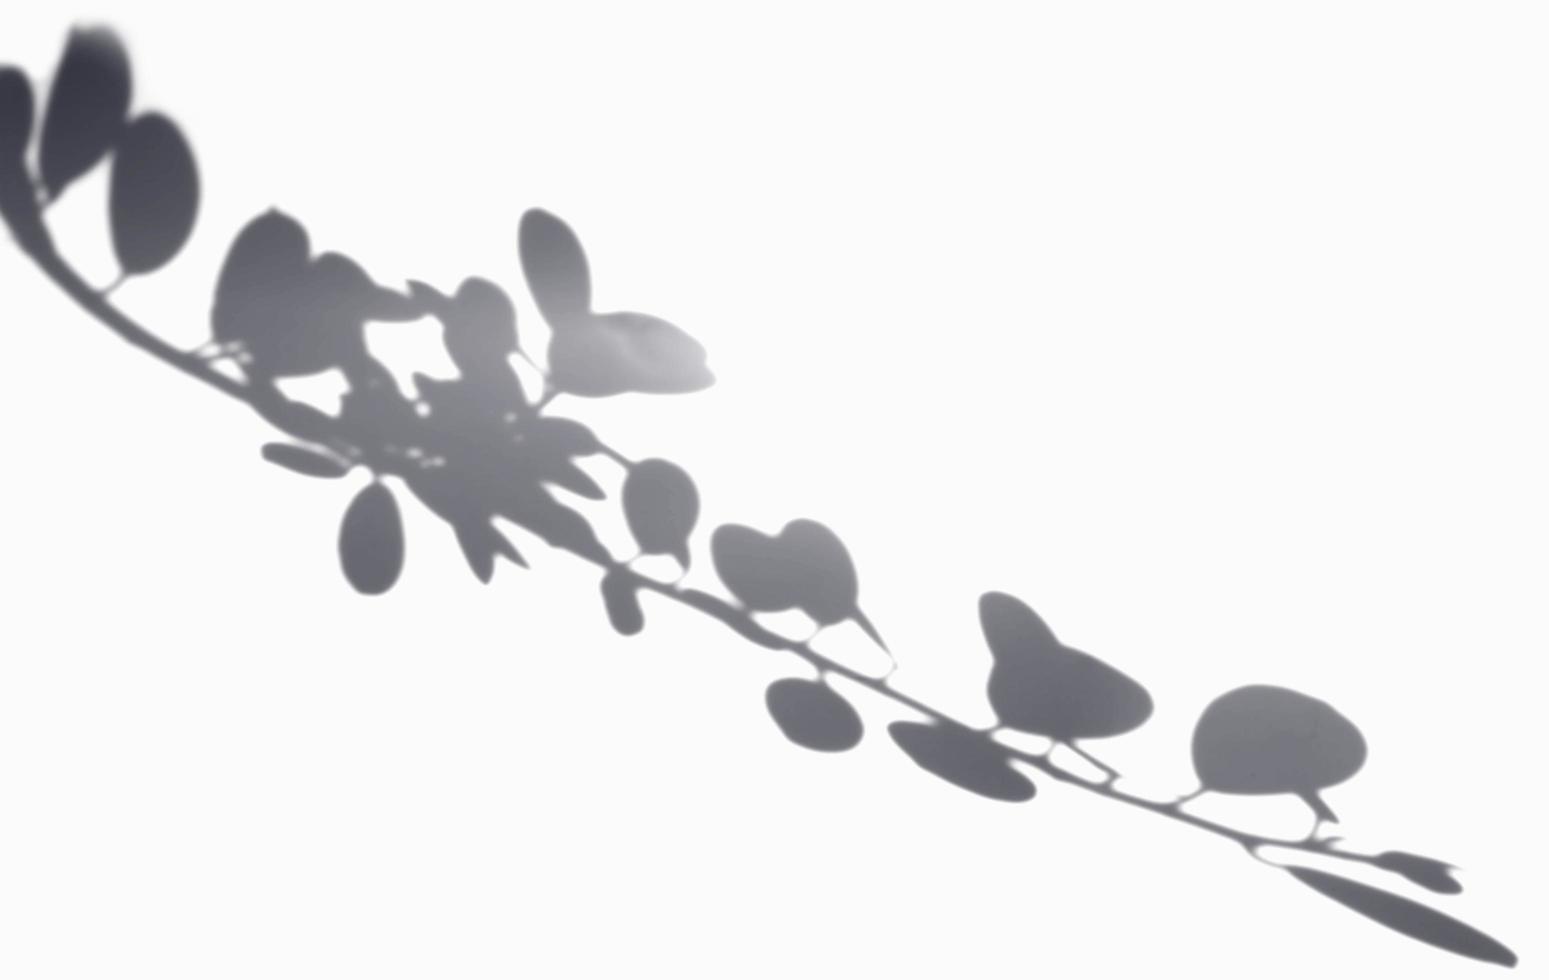 il dollaro ombra lascia sfondo bianco. illustrazione realistica dell'effetto di sovrapposizione delle foglie. la silhouette di luci e ombre della natura per decorare il design creativo. foto